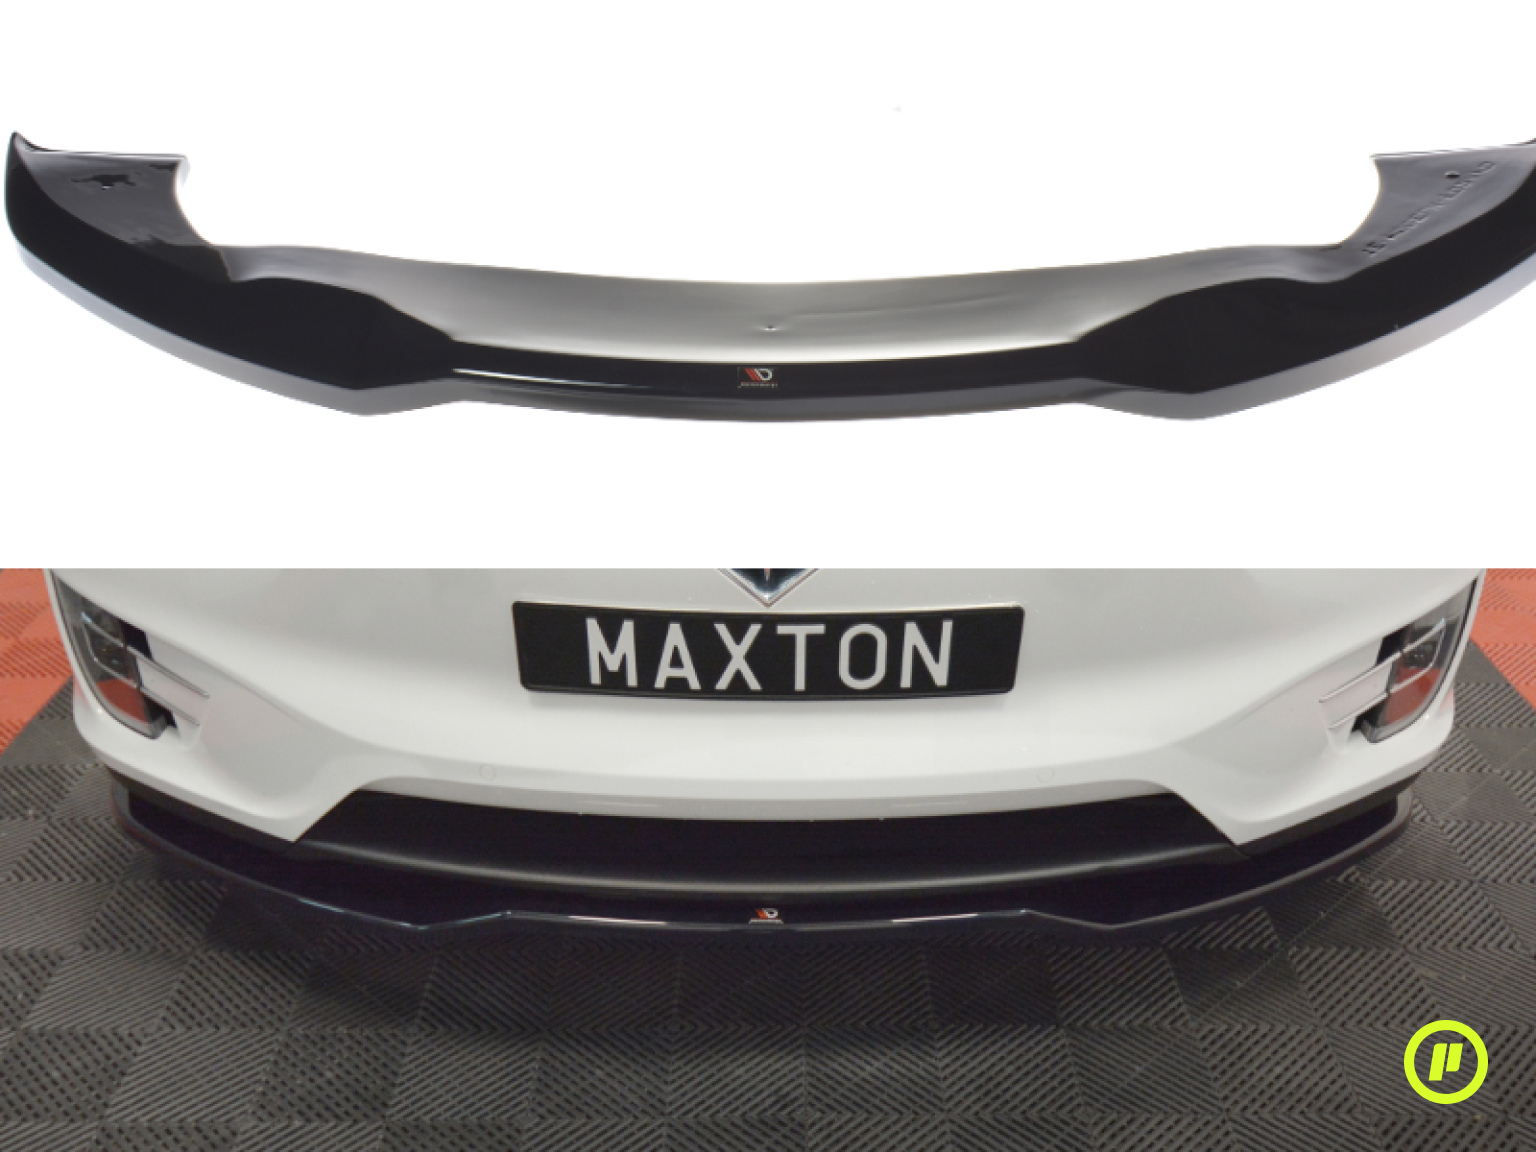 Maxton Design - Front Splitter v2 for Tesla Model X (2015+)